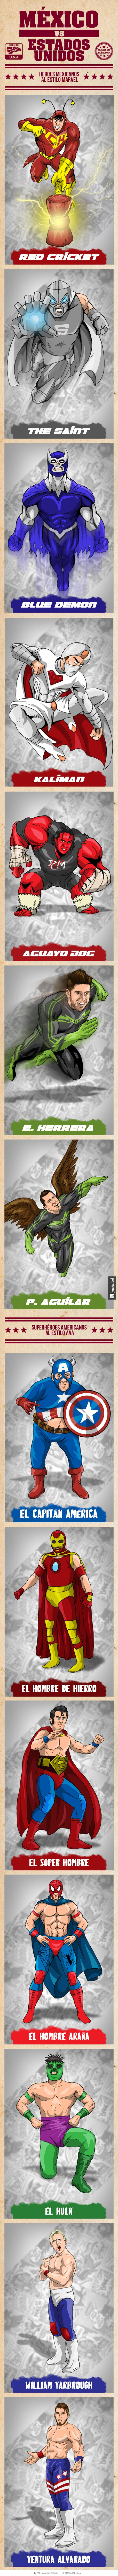 Superhéroes mexicannos al estilo Marvel